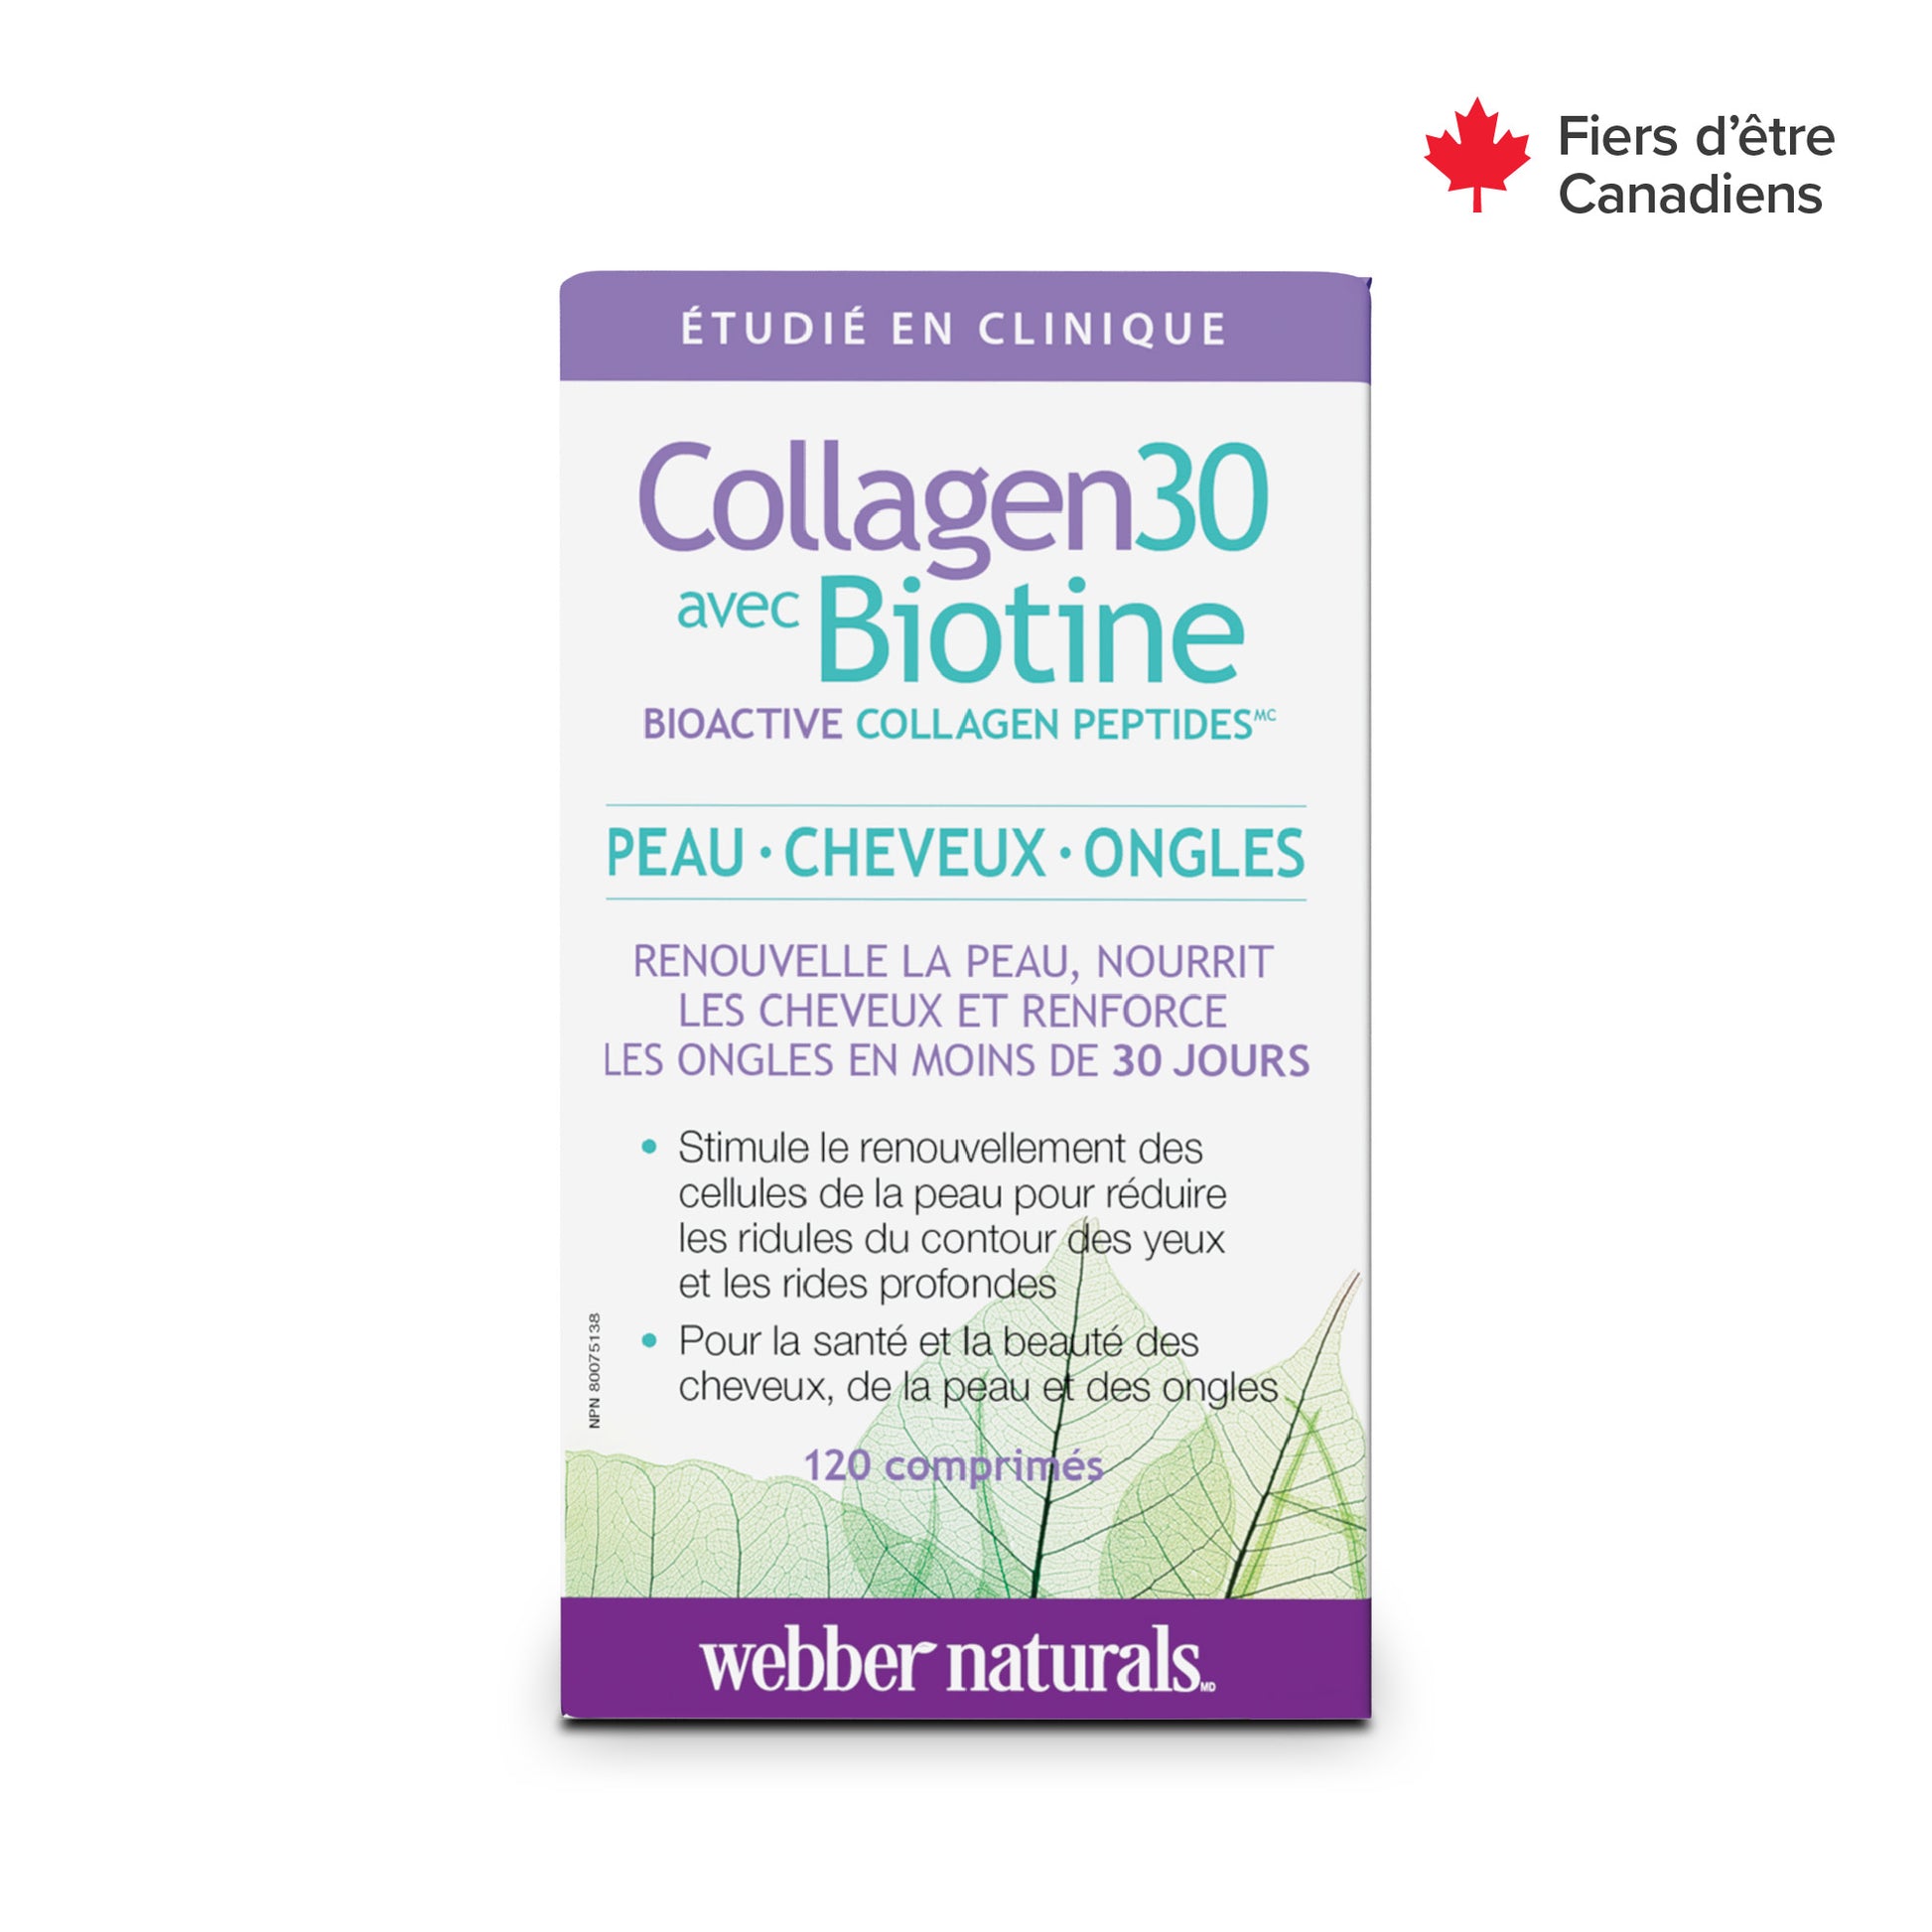 Collagen30 avec Biotine Bioactive Collagen Peptides for Webber Naturals|v|hi-res|WN3668